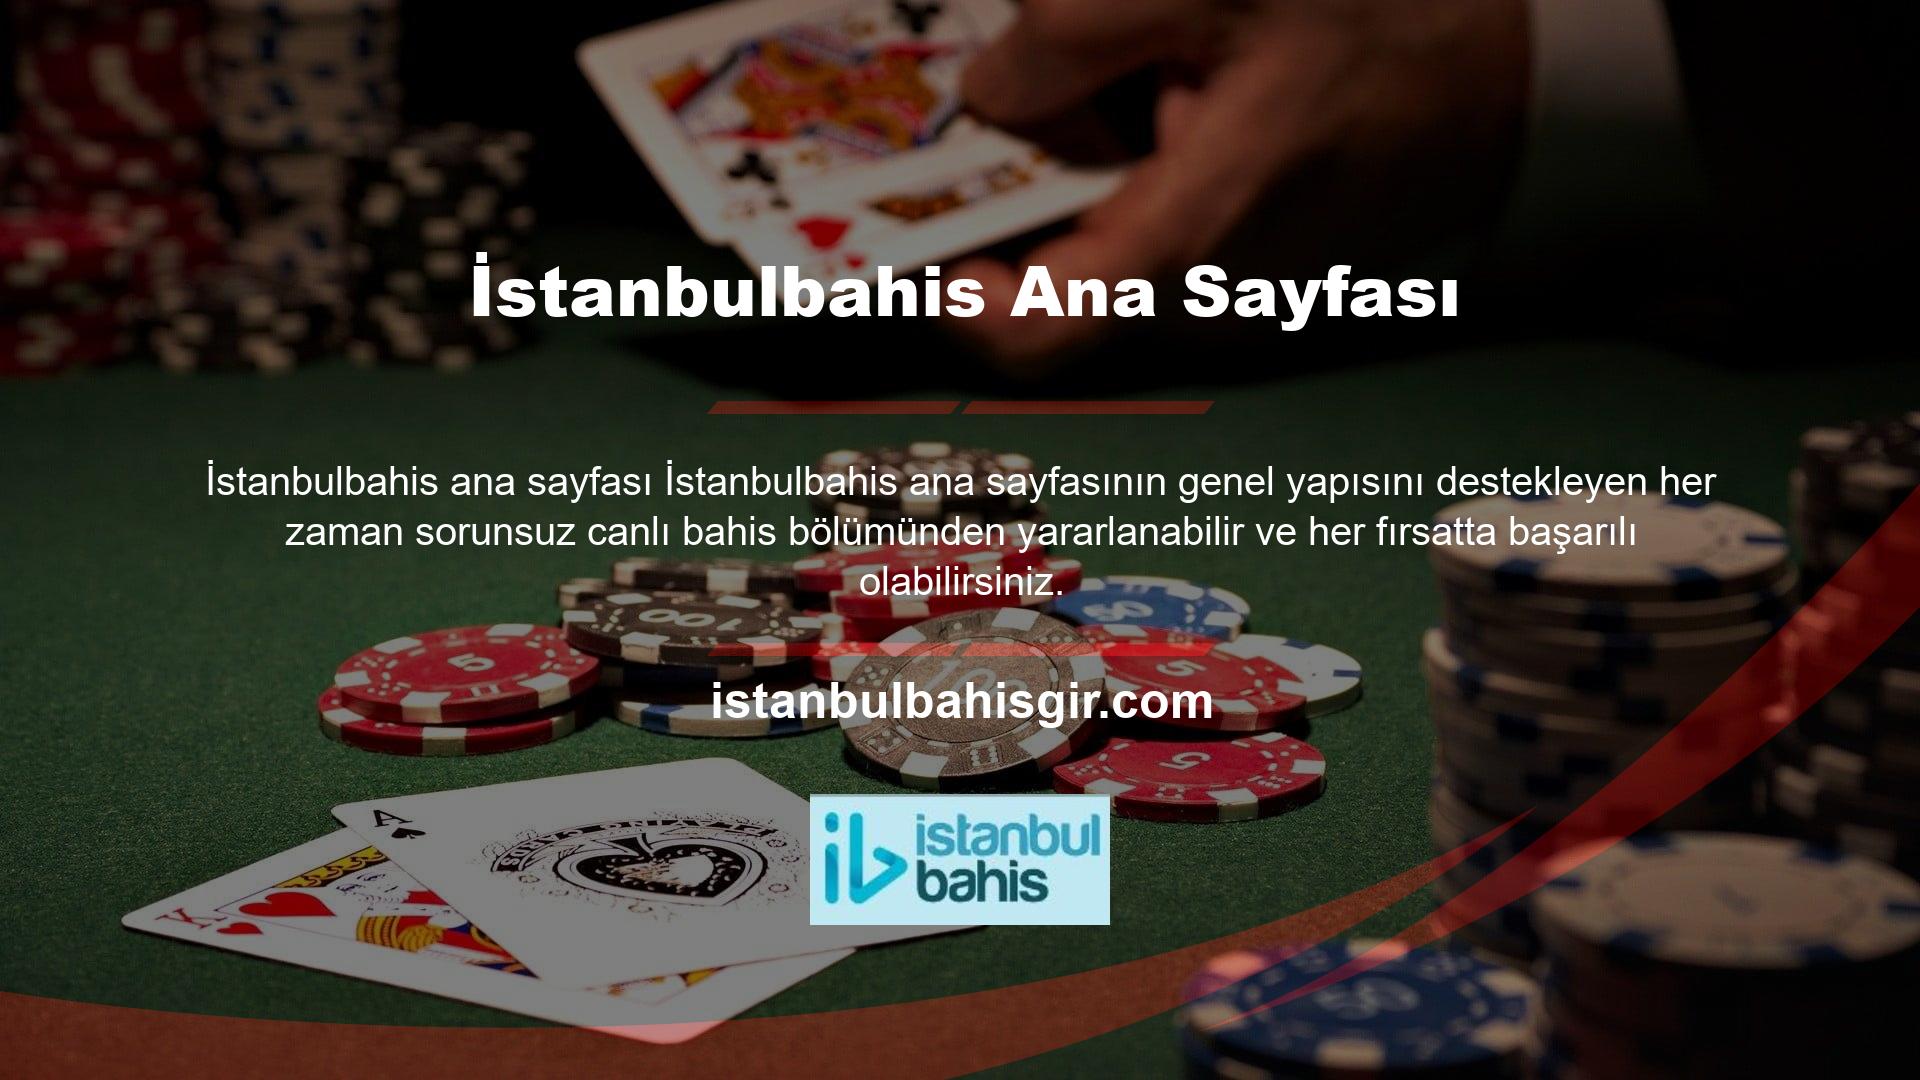 Bu nedenle canlı bahis ve casino kredilerinden en iyi şekilde yararlanmak için İstanbulbahis üyelik açmanız gerekiyor